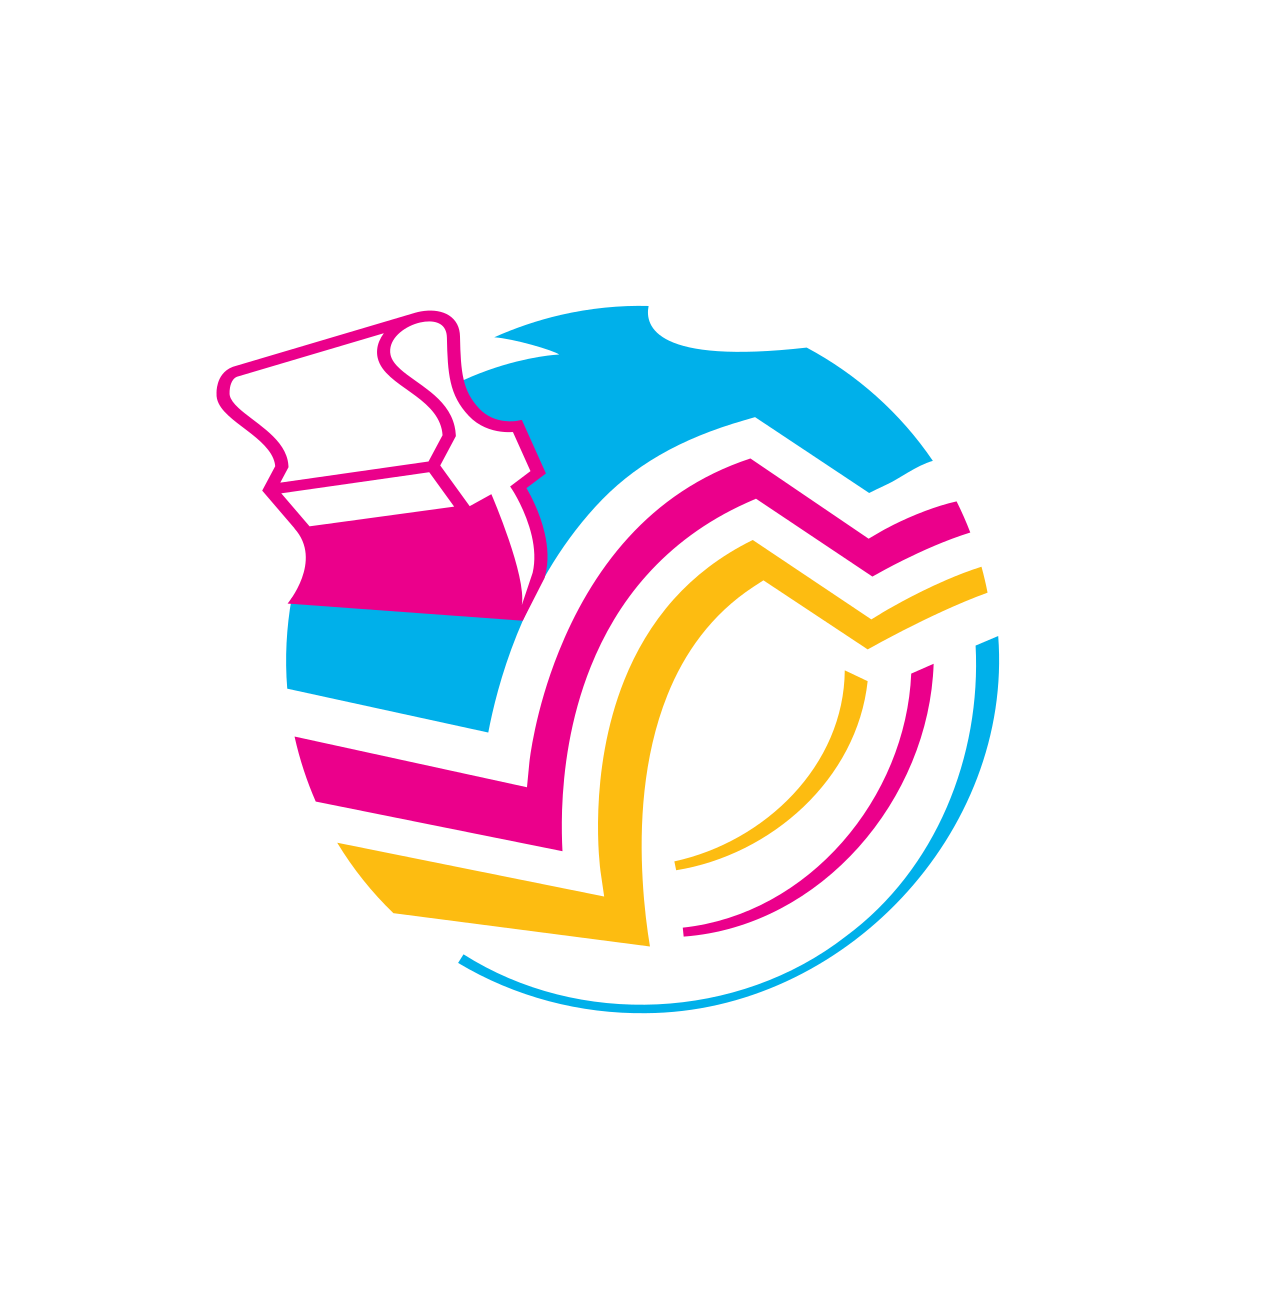 BEES TEES N MORE's logo